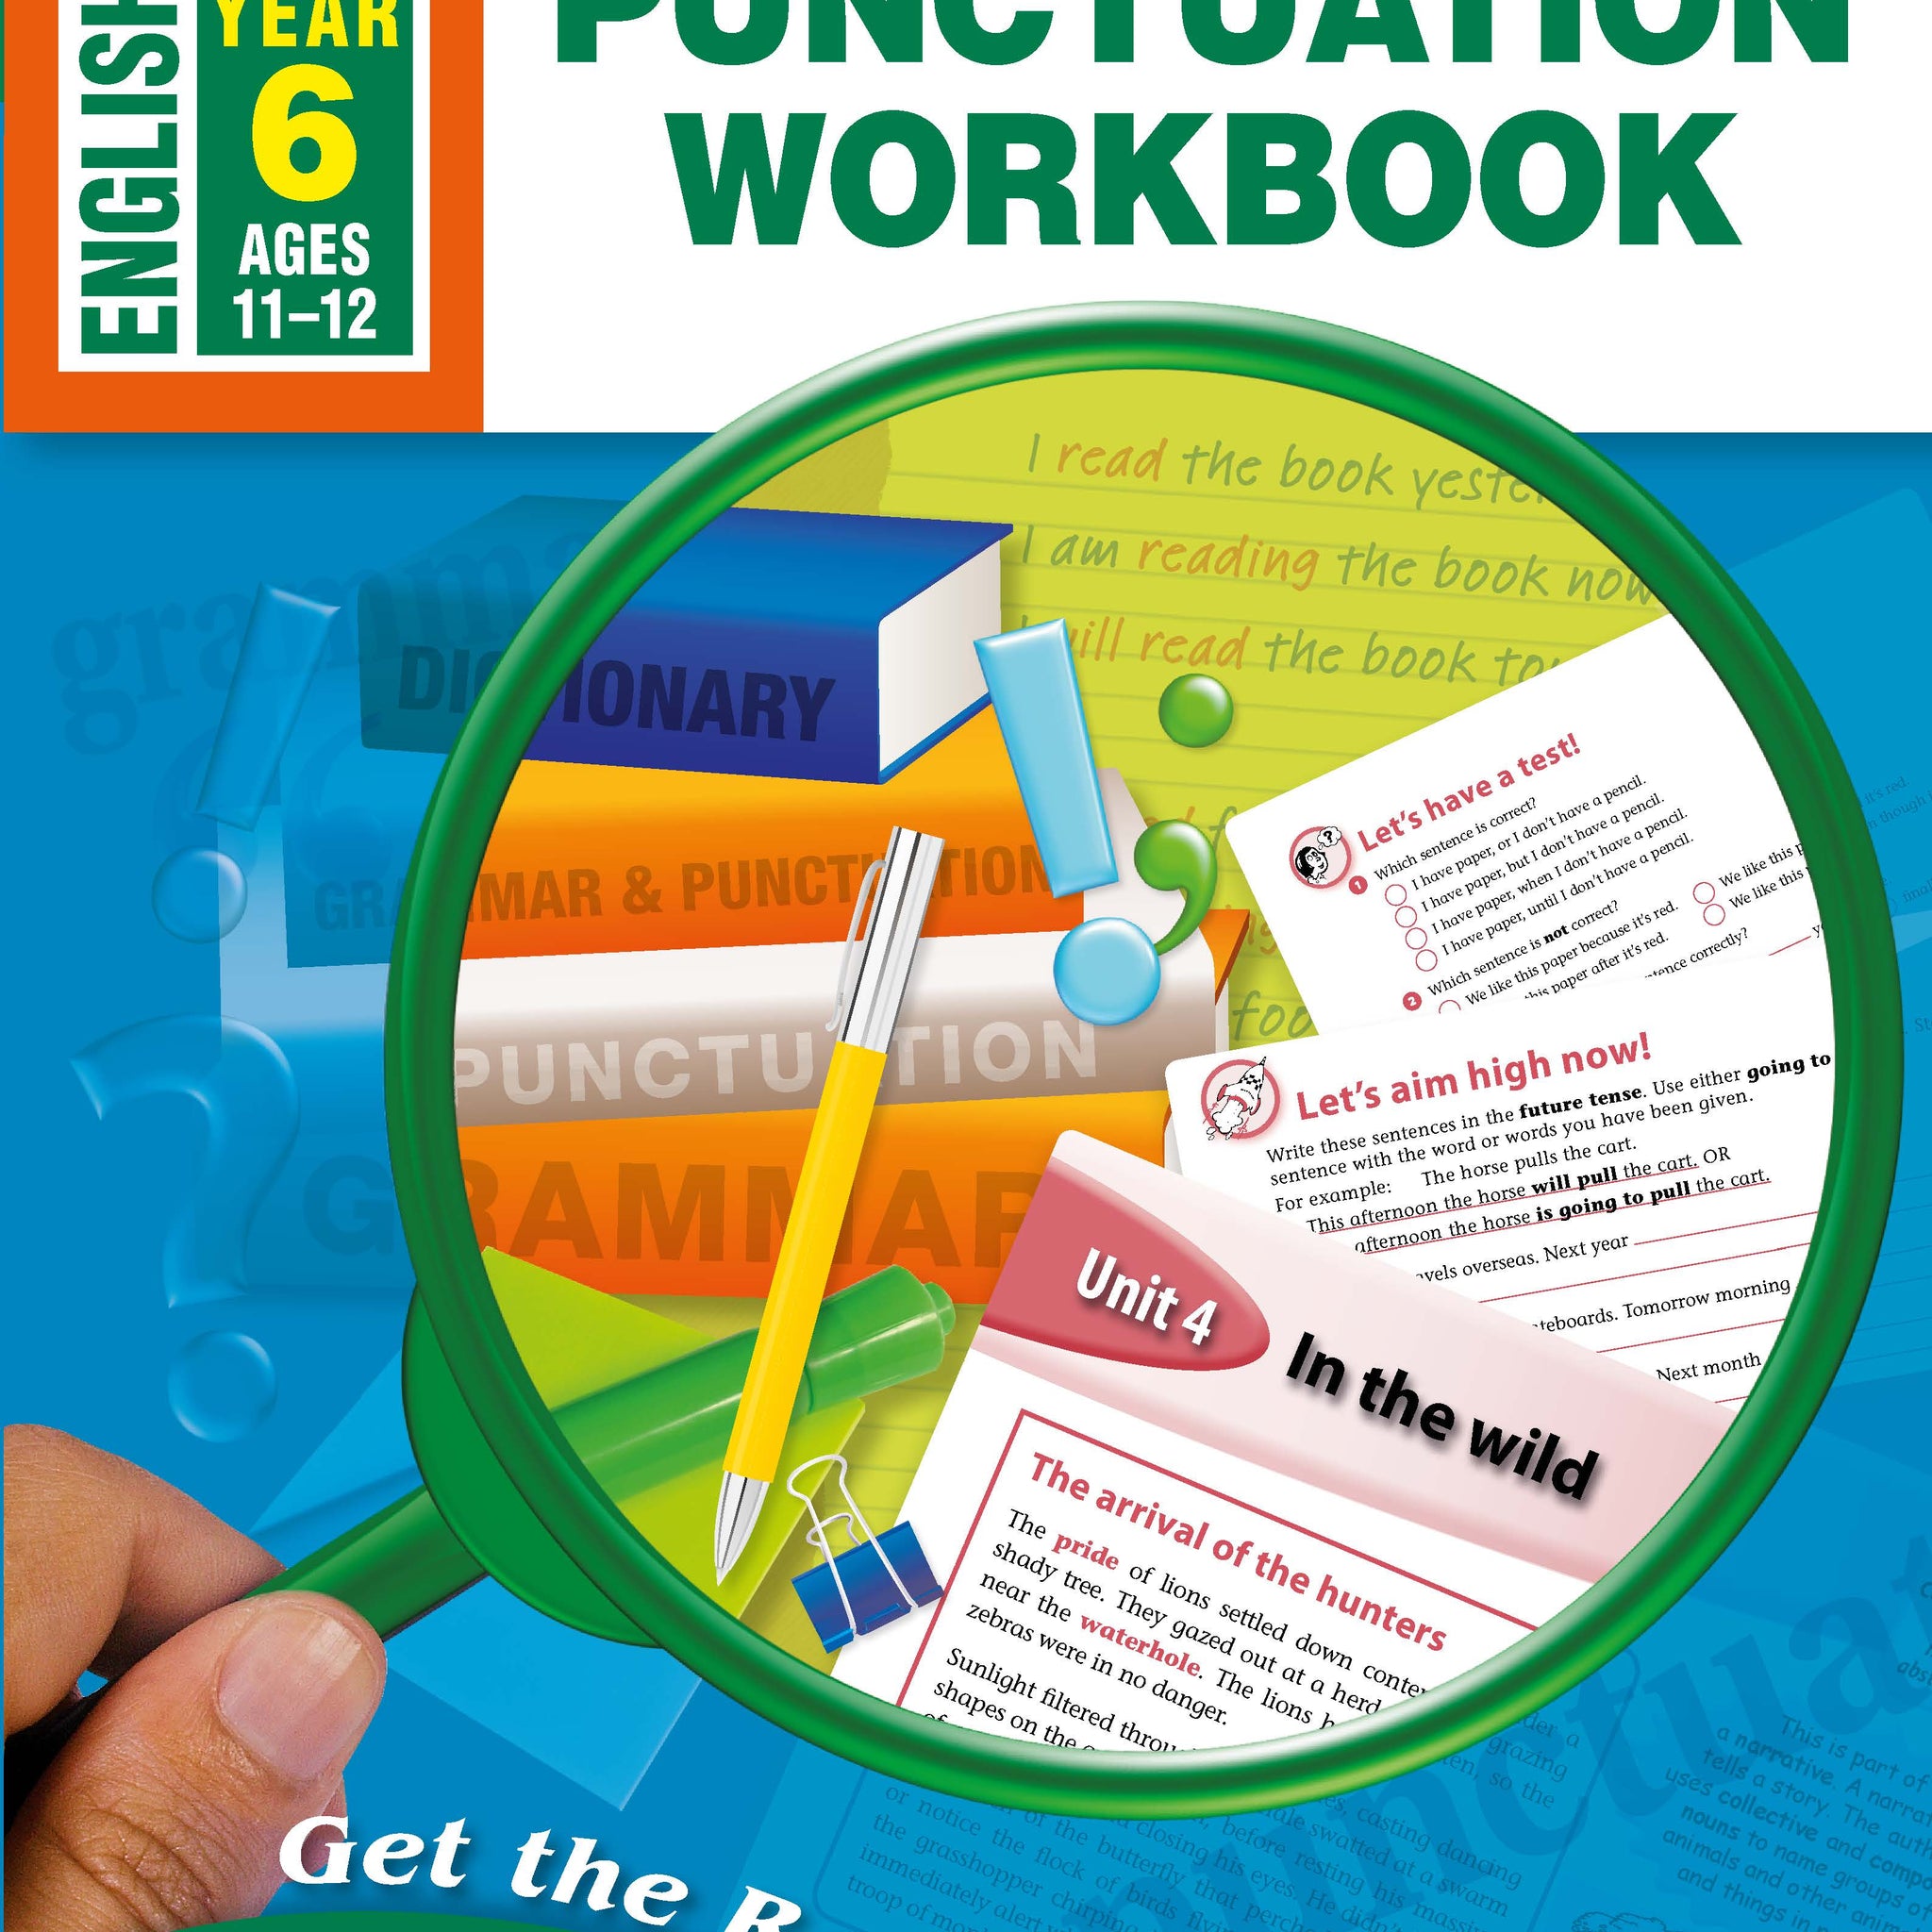 Excel Advanced Skills Workbook: Grammar and Punctuation Workbook Year 6